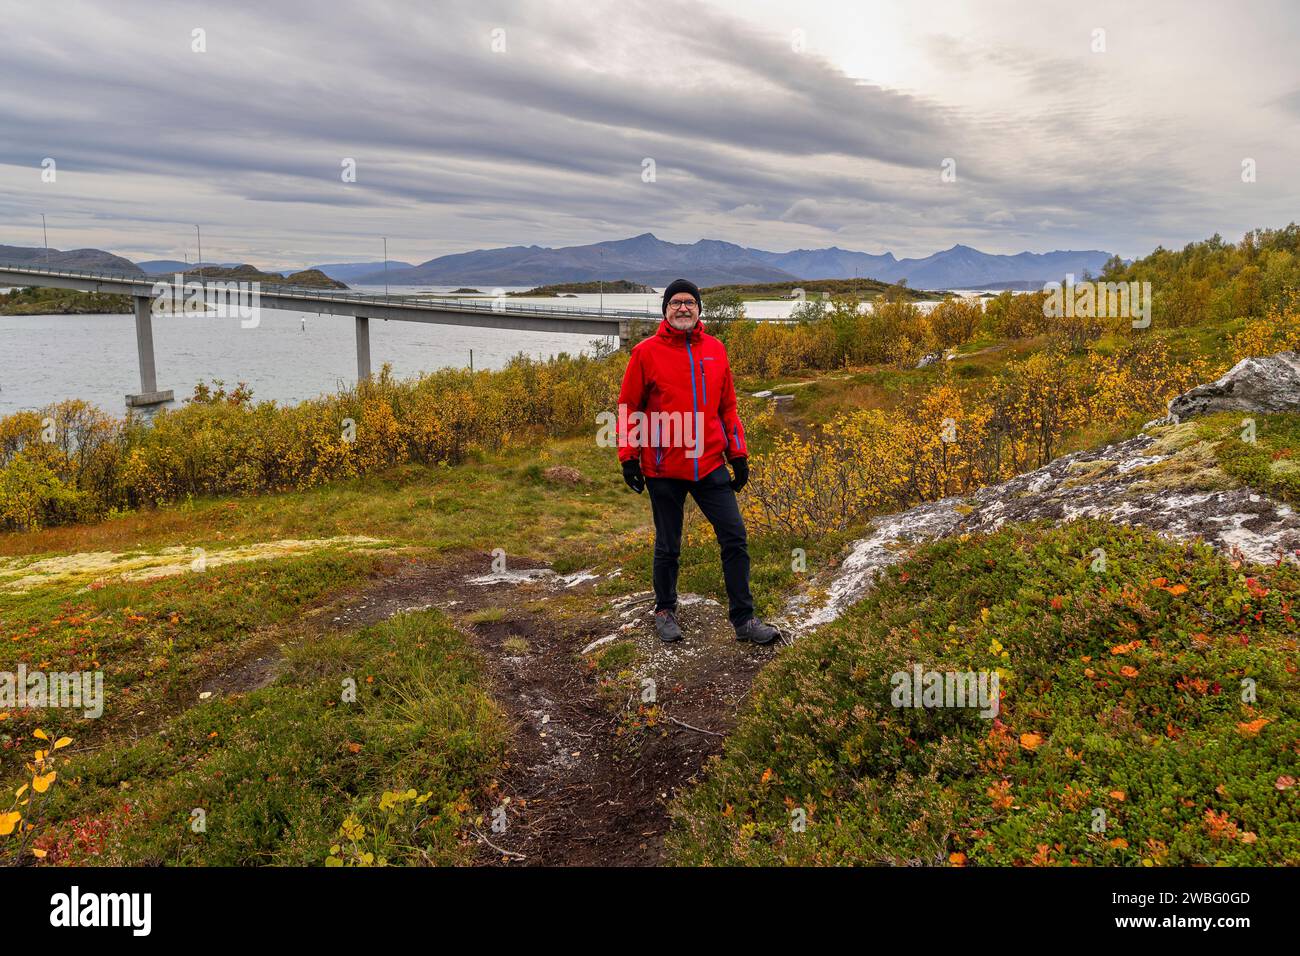 Wandermann in der herbstlichen Natur Norwegens. Wandern am Fjord und den Bergen auf der Insel Kvaløya in Troms, Wanderer auf dem Weg, Wanderer Paradies Stockfoto